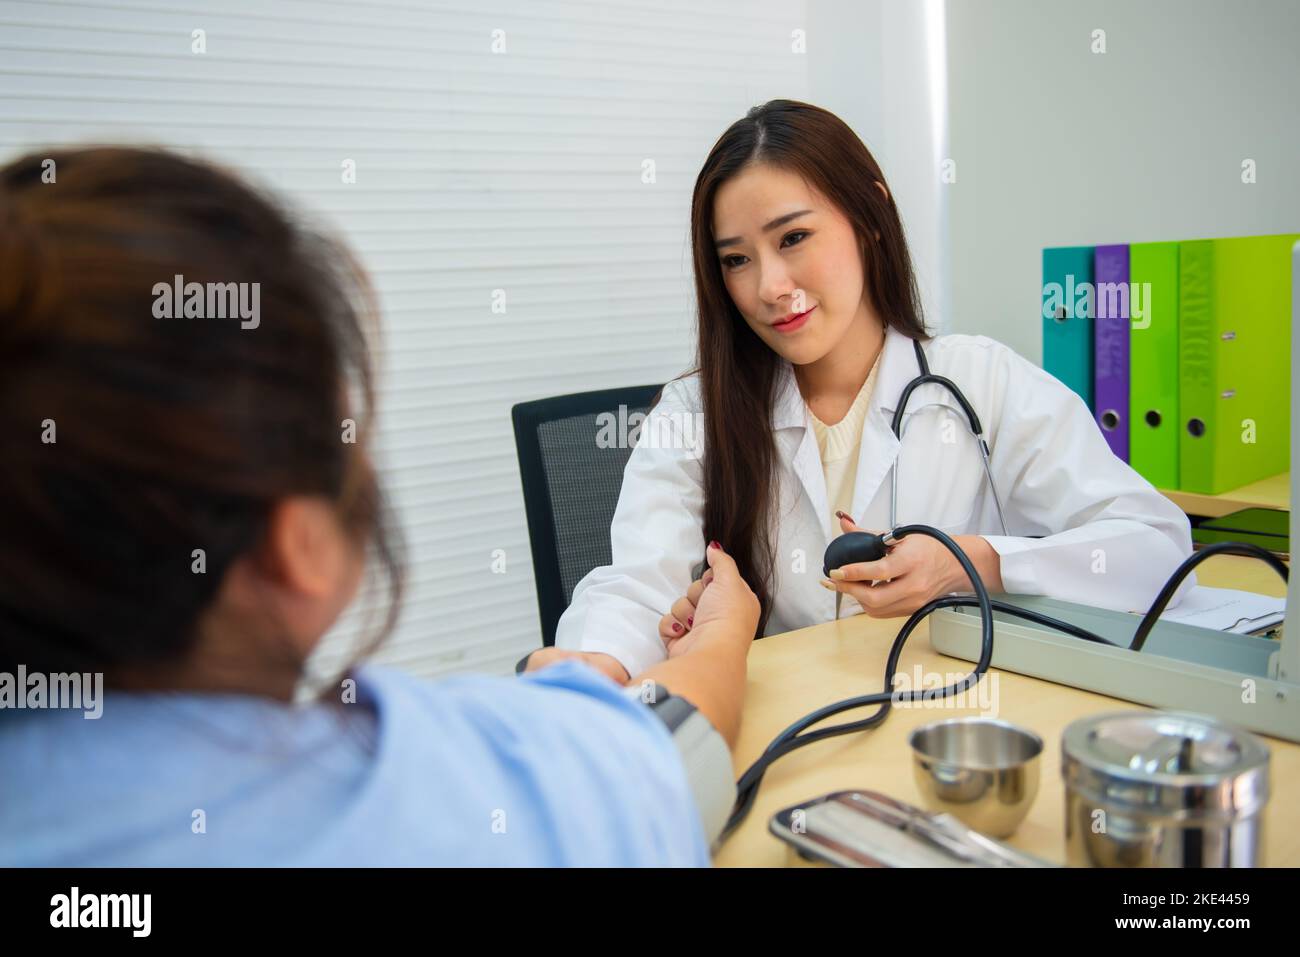 Asiatische Ärztin verwendet Quecksilber-Blutdruck, um den Blutdruck des Patienten zu bestimmen. Stockfoto